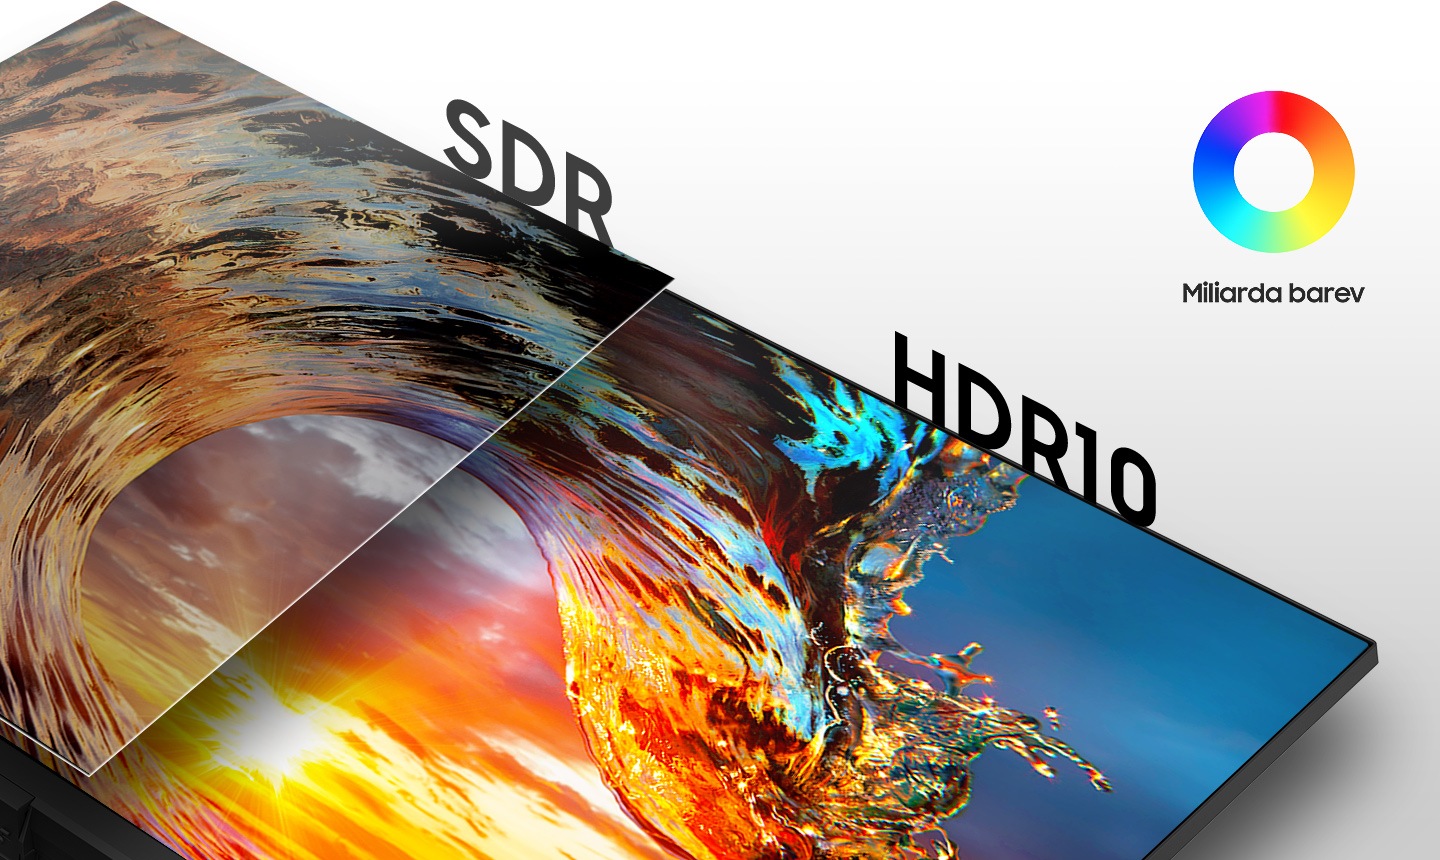 Porovnání obrazovky SDR vlevo a obrazovky HDR10 vpravo. Vpravo nahoře je ikona 1 miliardy barev.